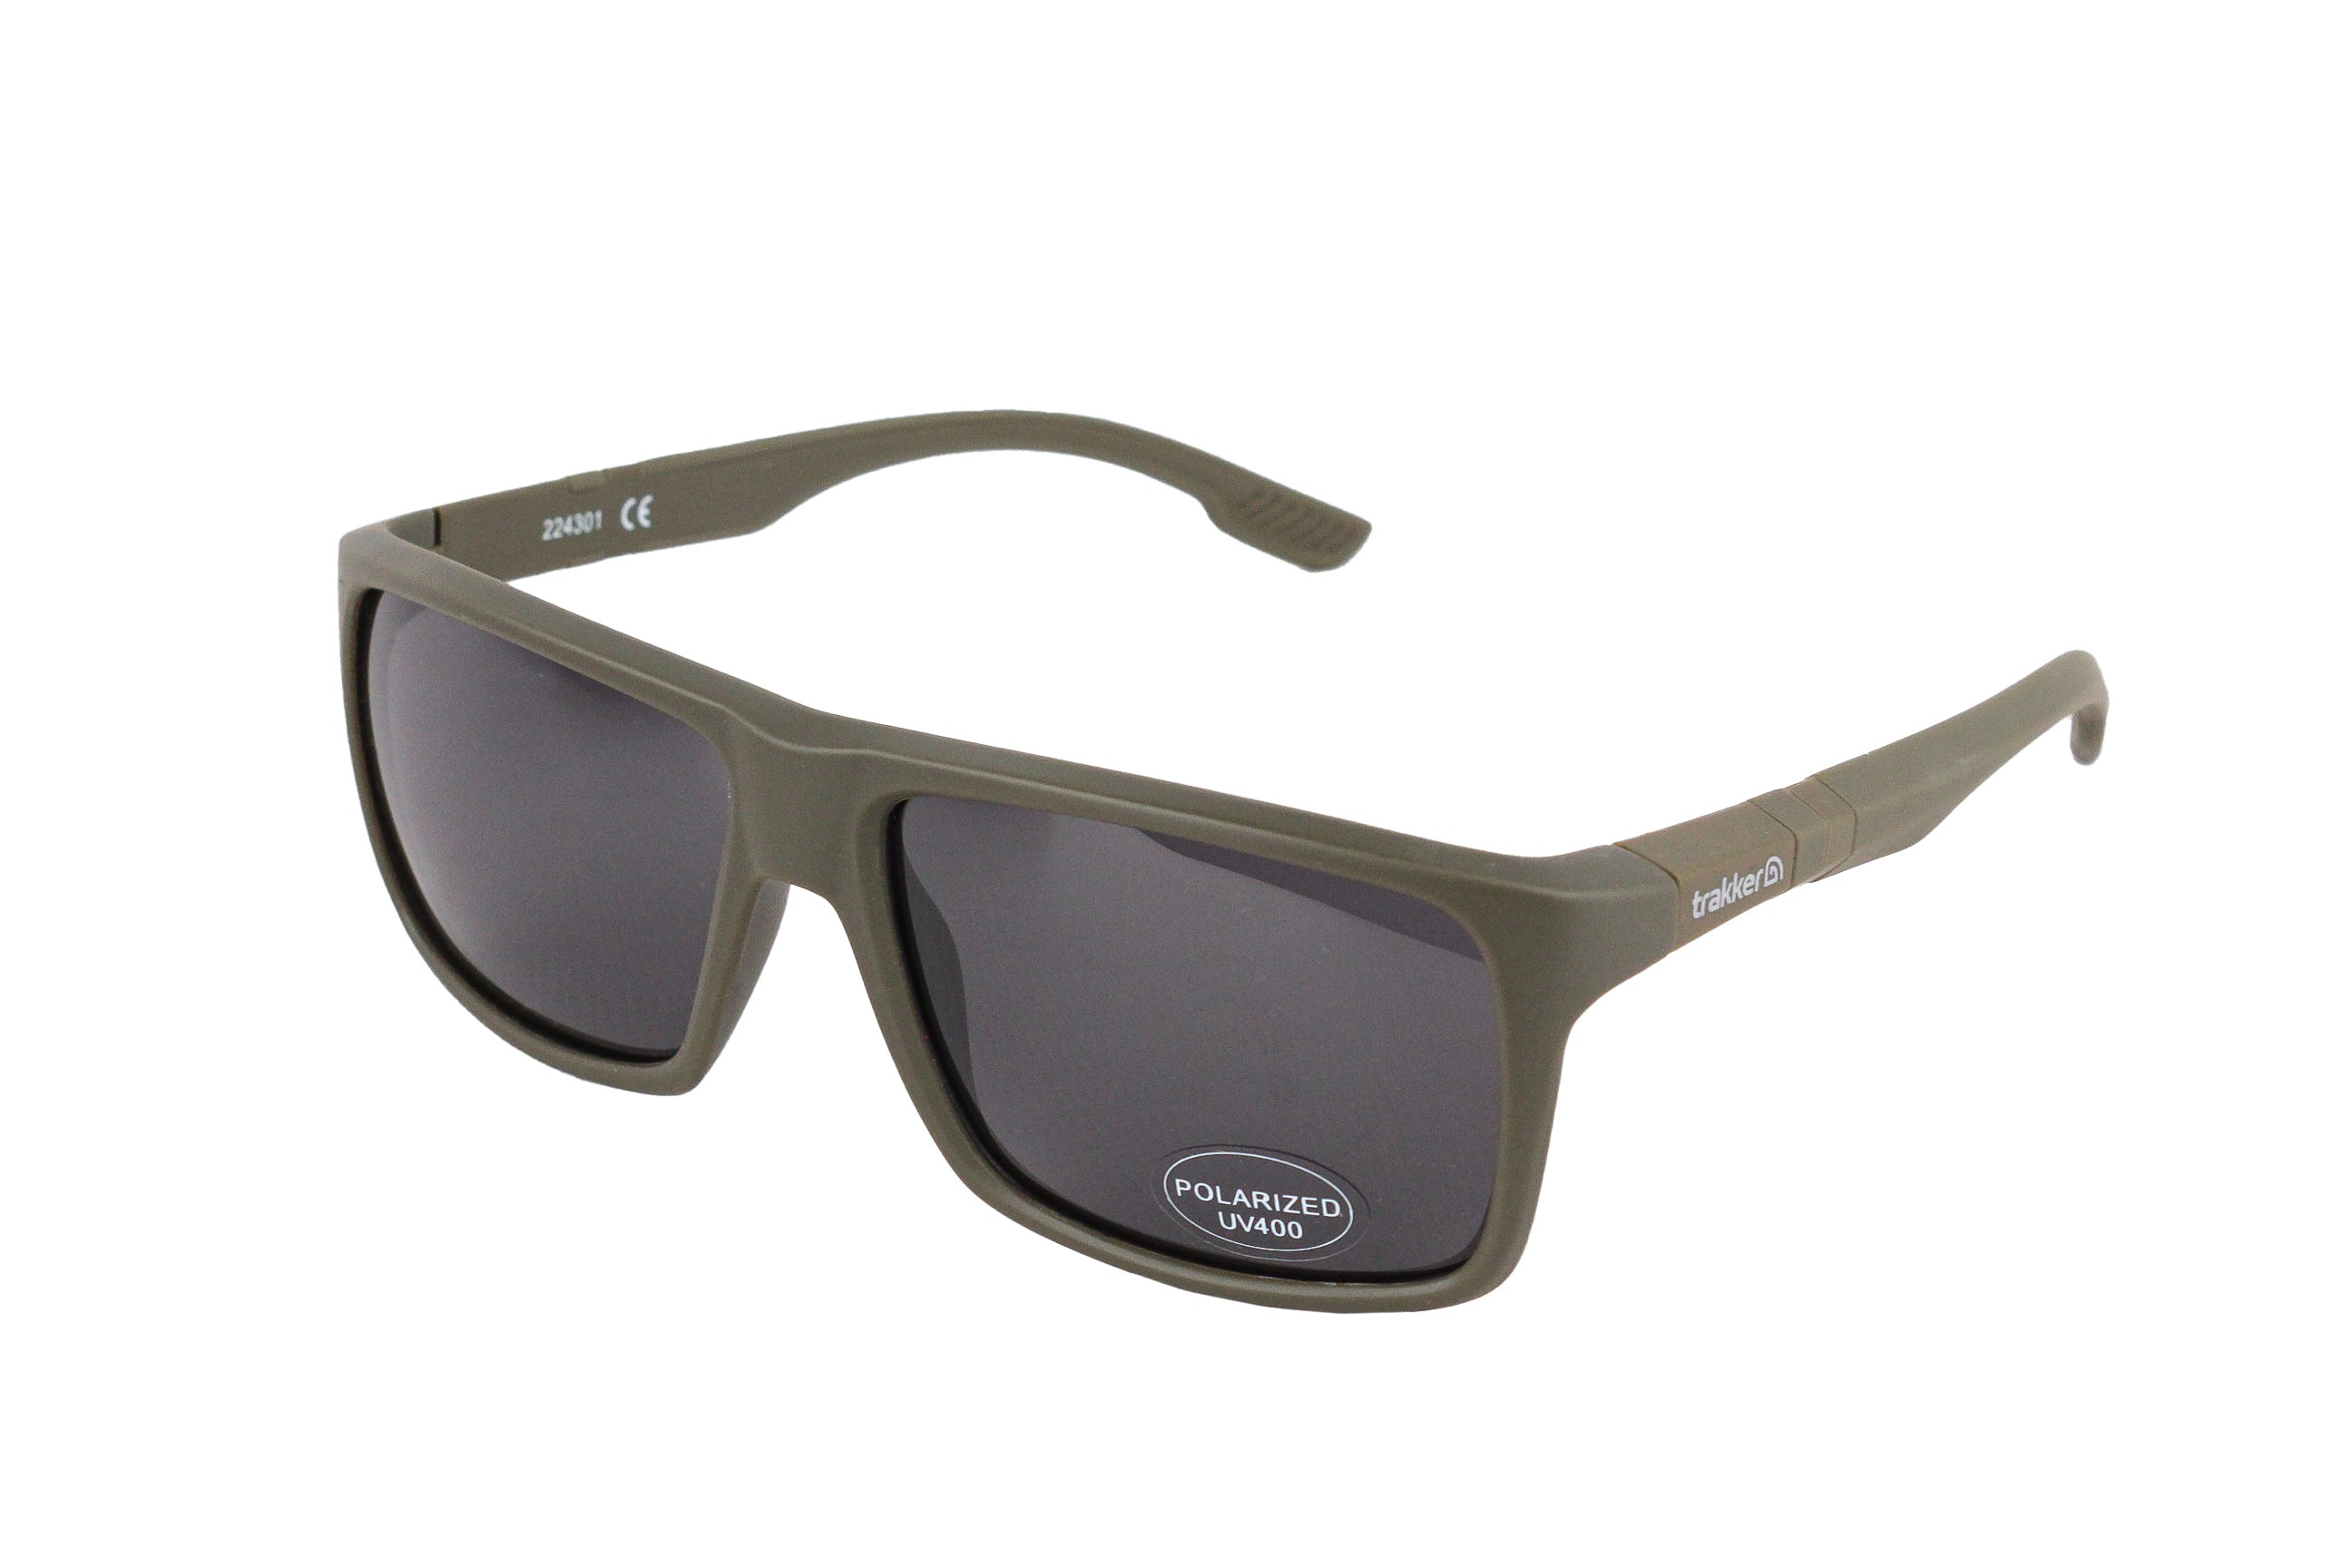 Очки Trakker Classic Sunglasses - фото 1